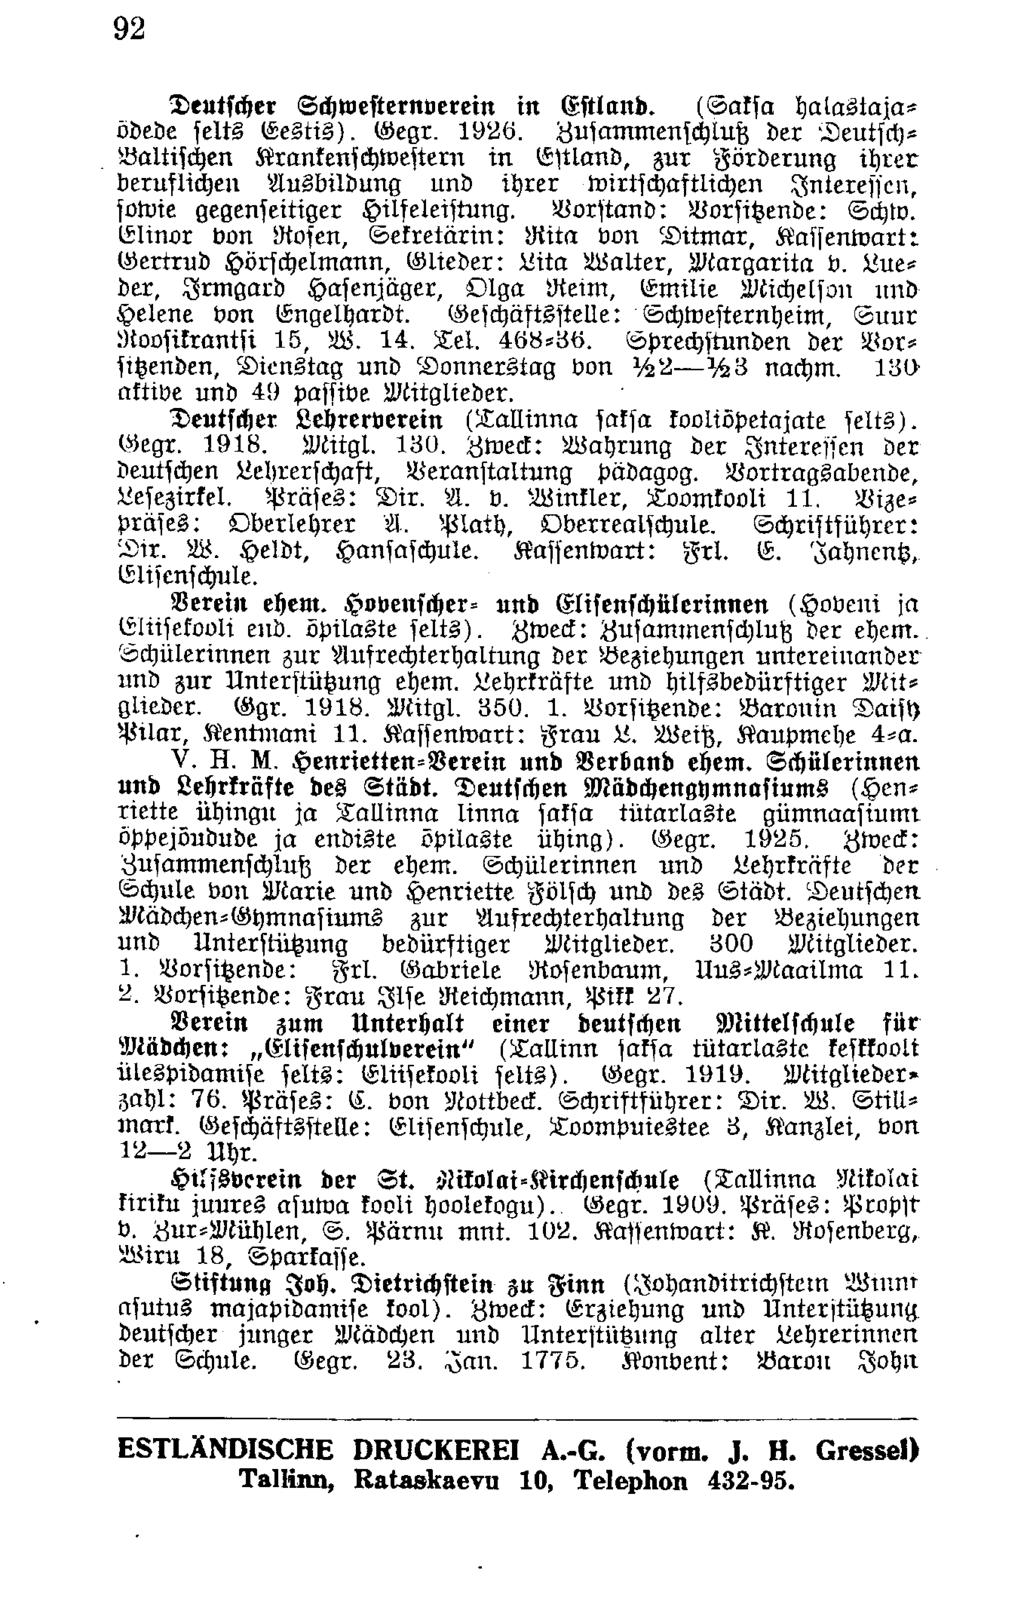 92 Deutscher Schwesternverein in Estland. (Saksa halastajaödede selts Eestis). Gegr. 1926.